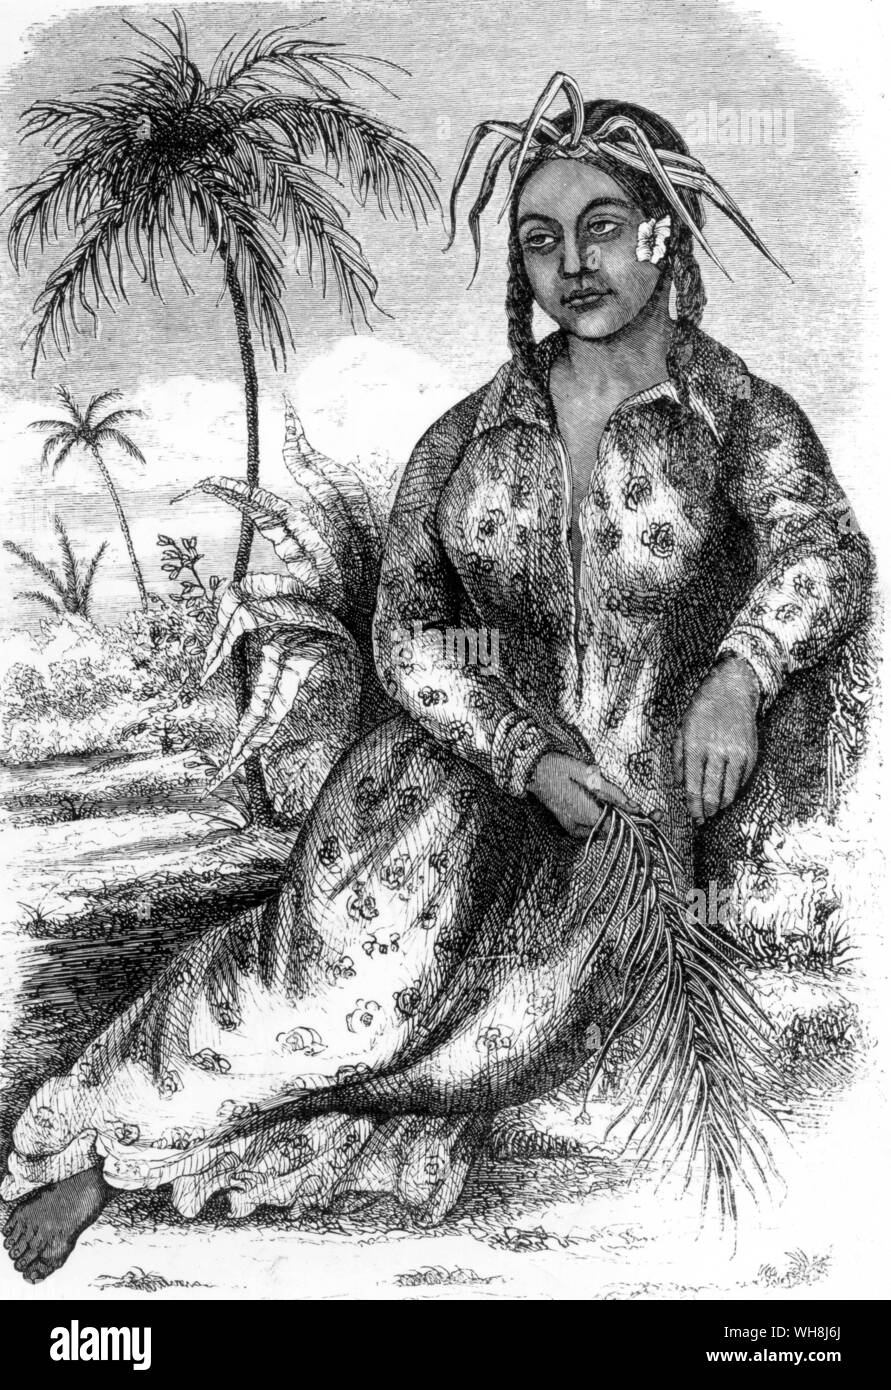 Königin Pomare von Tahiti, "eine große unbeholfenen Frau ohne Schönheit, Anmut und Würde. Sie hat nur eine königliche Attribut - eine perfekte Unbeweglichkeit der Ausdruck unter allen Umständen, und dass ein eher mürrisch." Darwin und der Beagle von Alan Moorhead, Seite 216 und 217. Stockfoto